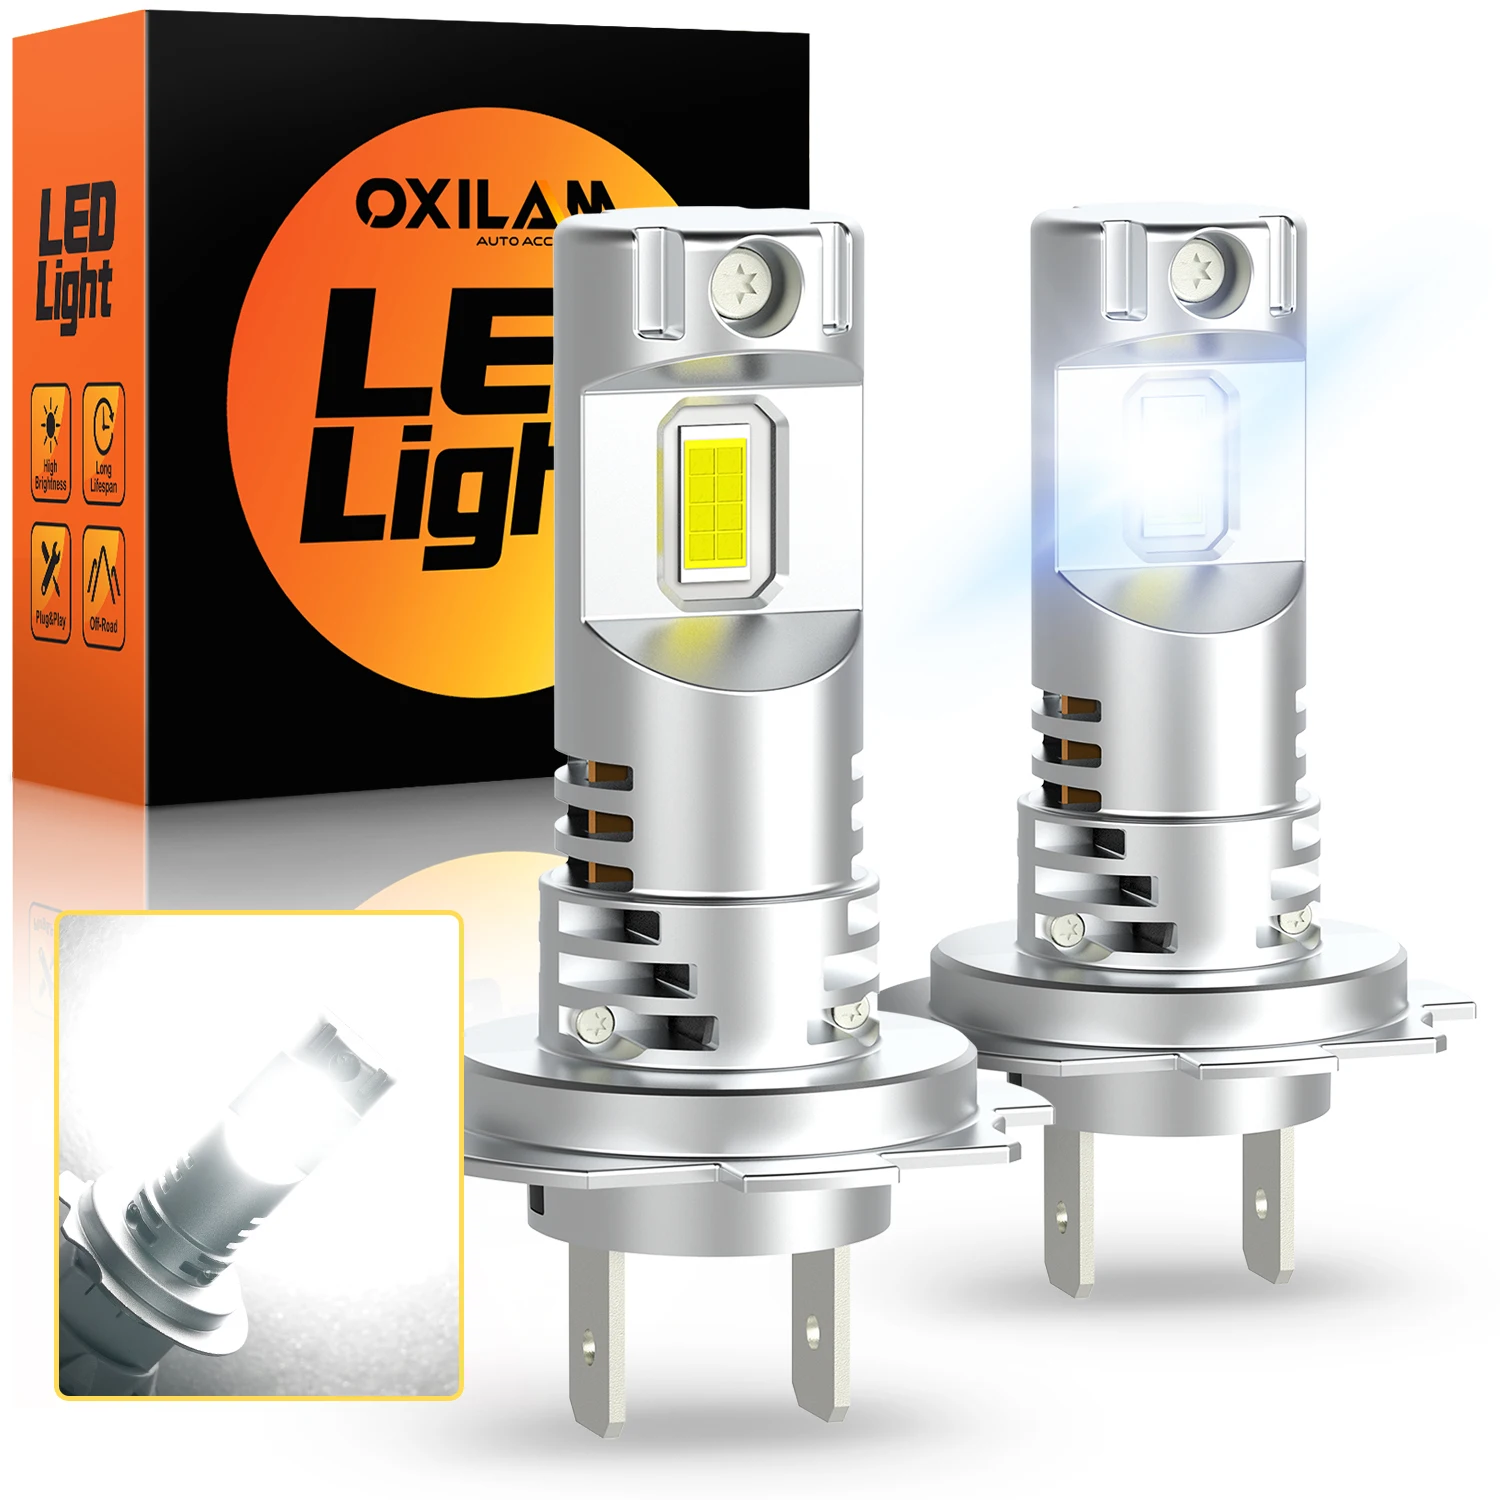 

OXILAM 20000LM H7 тонкая Светодиодный лампа для фар без вентилятора мини размер 5530 CSP H7 светодиодный 6500K супер белая 12В Беспроводная H7 автомобильная лампа